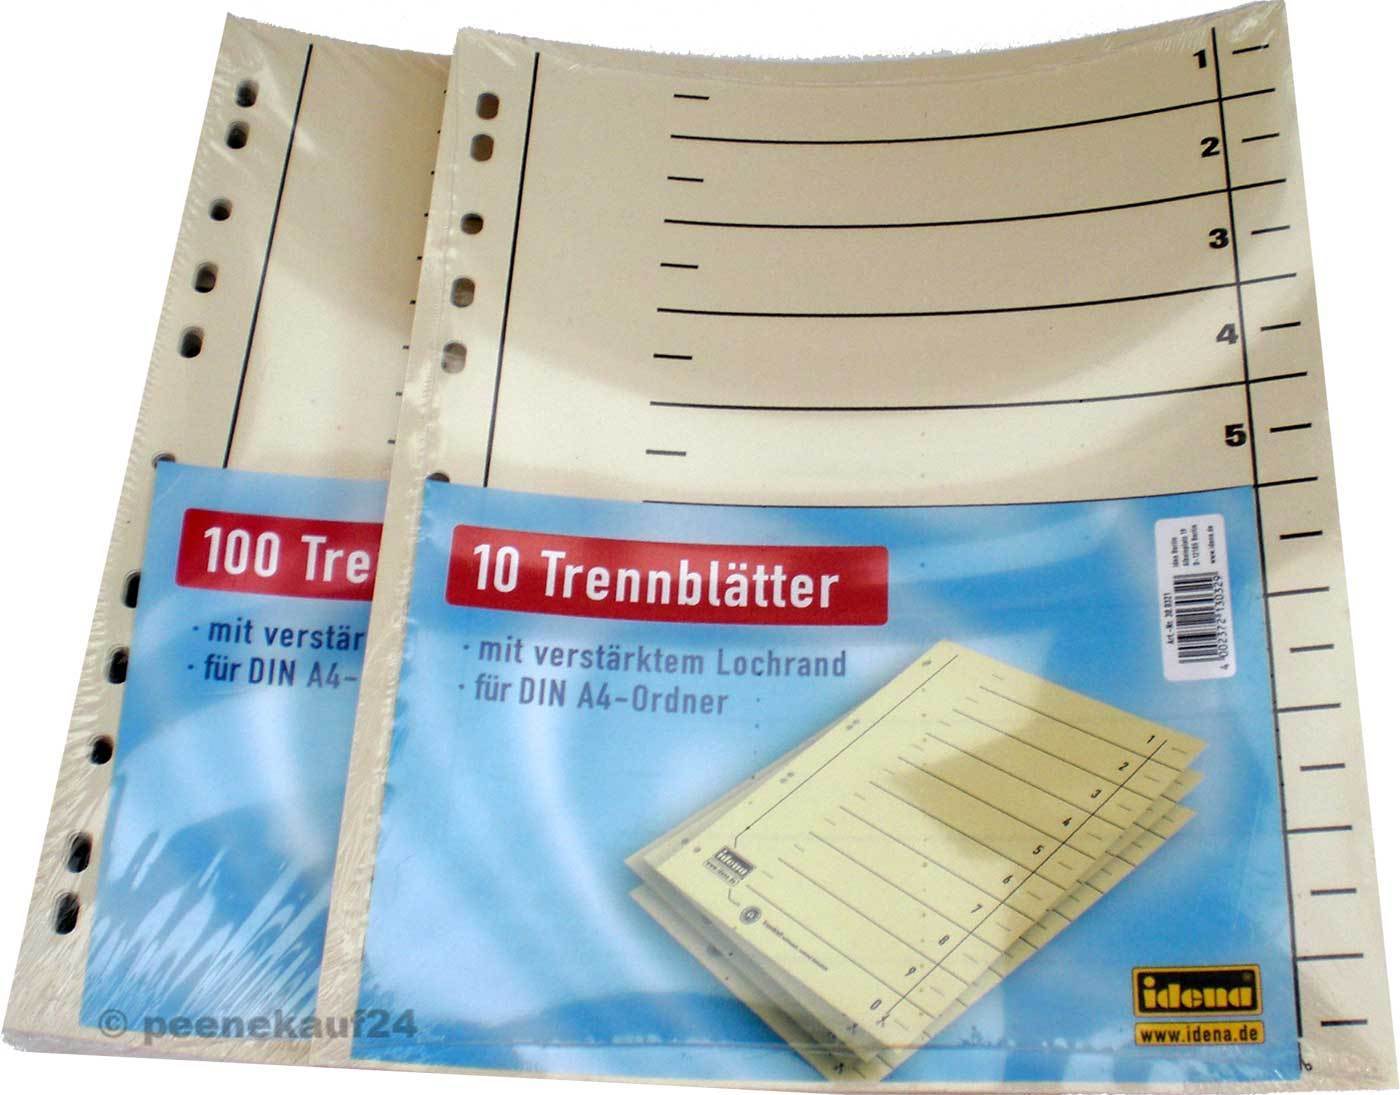 Trennblätter für DIN A4-Ordner 10 oder 100 Stück Pappe